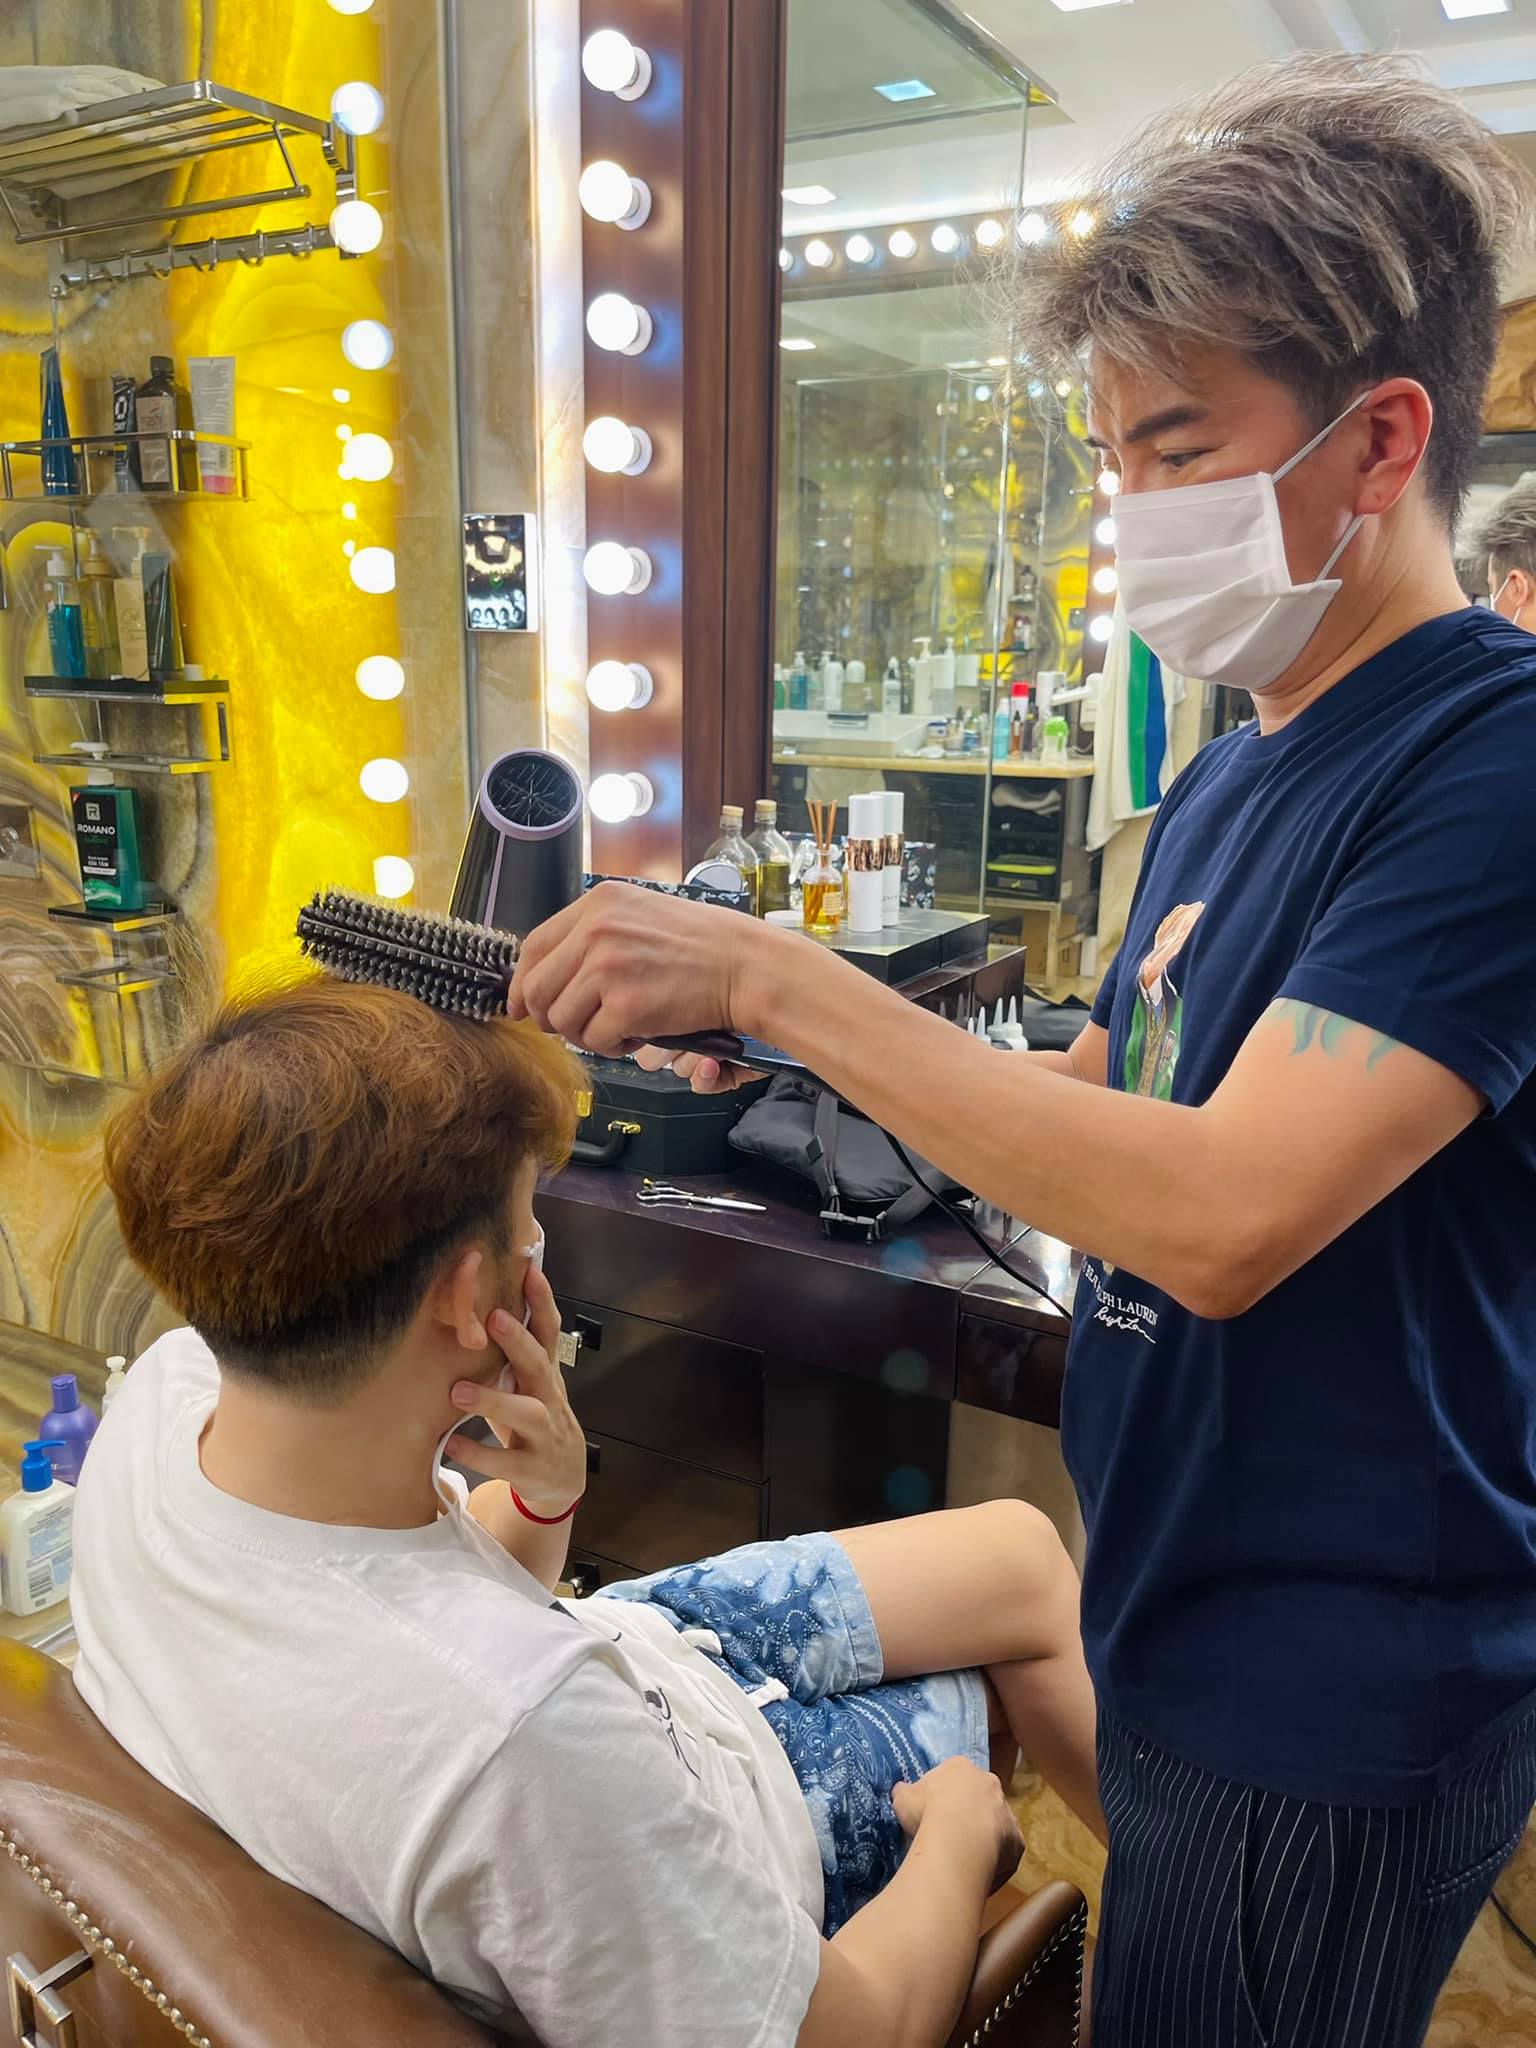 Chàng trai Trung Quốc khởi nghiệp với tiệm cắt tóc đậm nét hoài cổ   Startup VnExpress